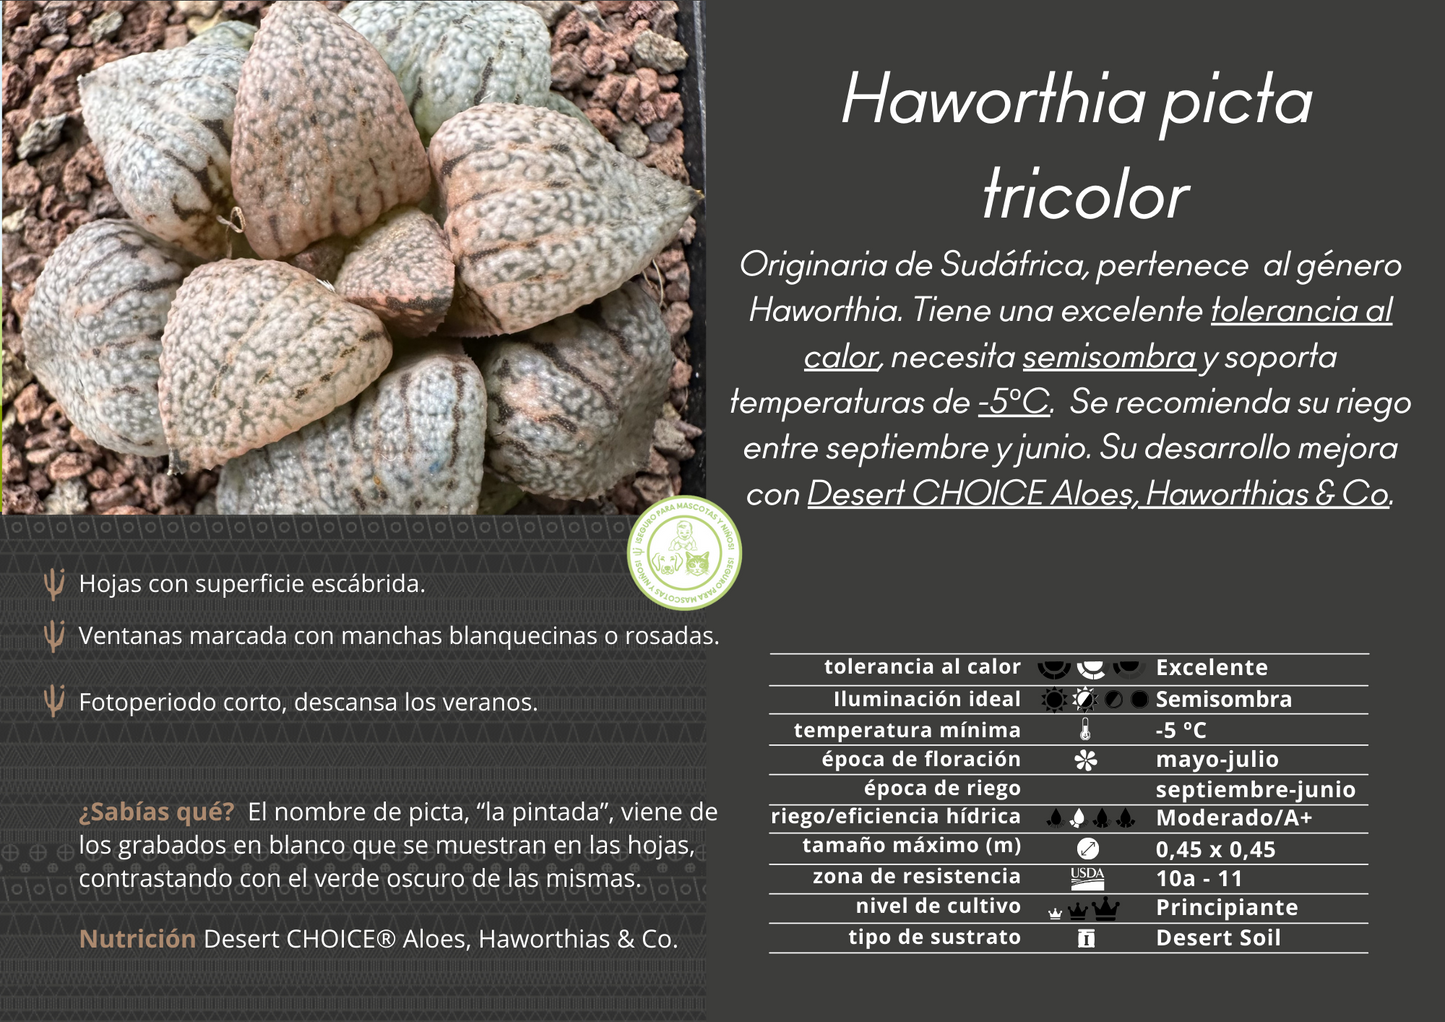 Haworthia picta tricolor